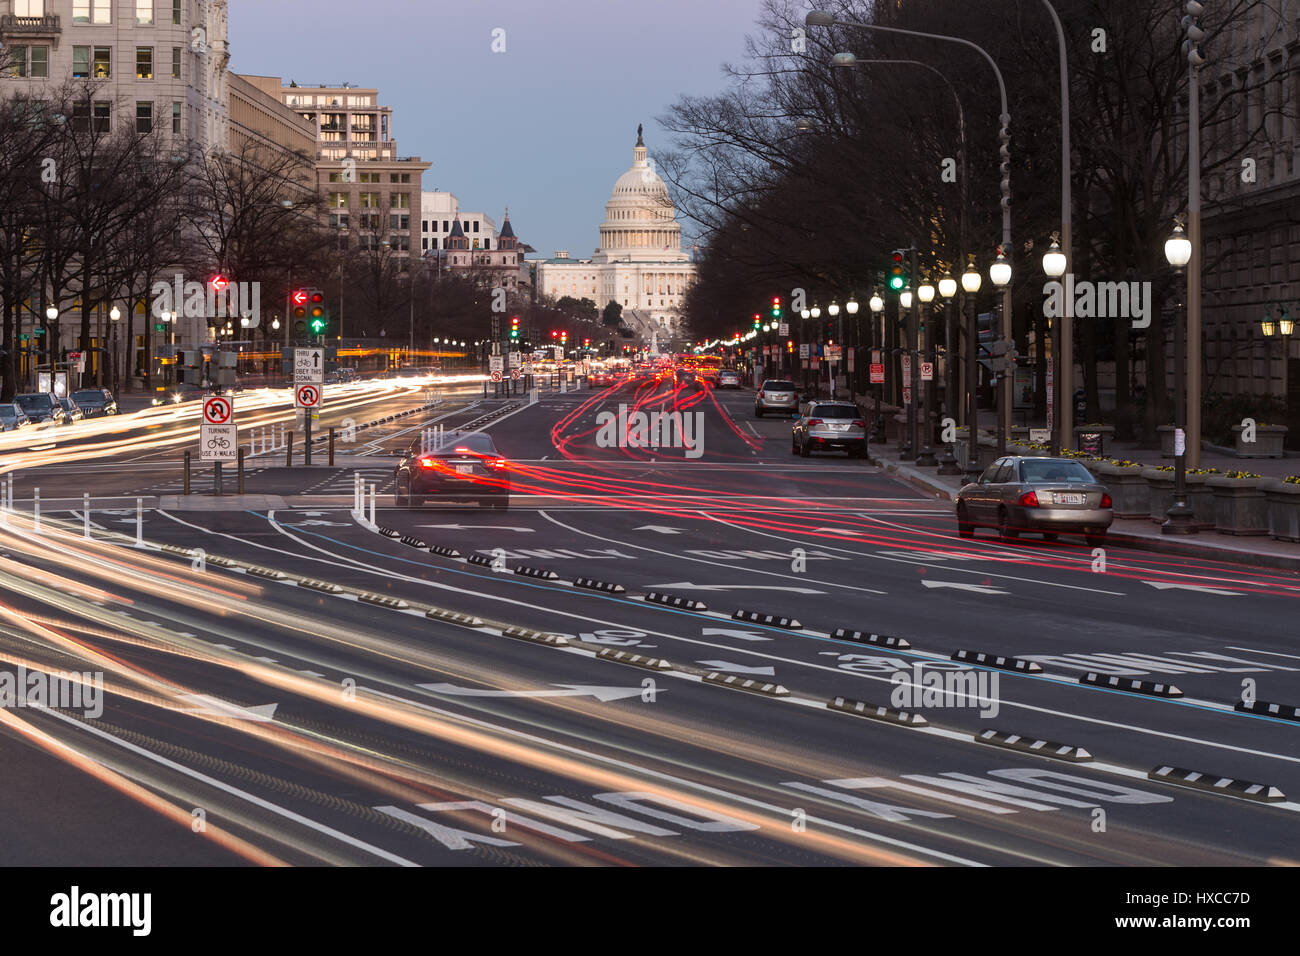 Crea tráfico estelas de luz y desenfoques de movimiento que conduce a el edificio del Capitolio de los Estados Unidos en la avenida Pennsylvania en Washington, DC. Foto de stock